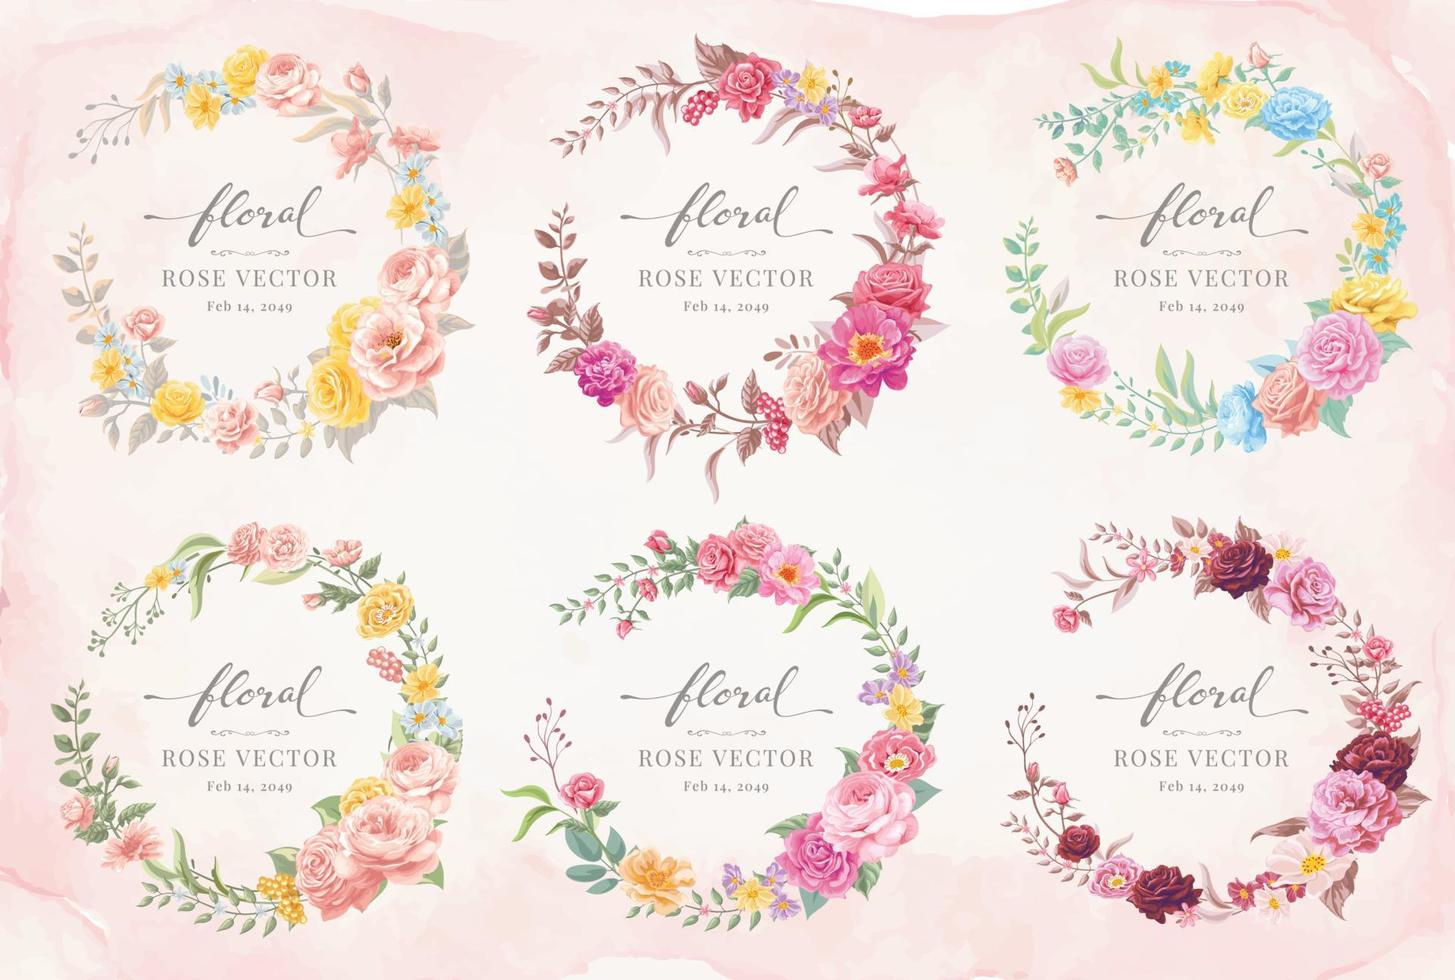 collectie set label mooie roze bloem en botanisch blad digitaal geschilderde illustratie voor liefde bruiloft valentijnsdag of arrangement uitnodiging ontwerp wenskaart vector